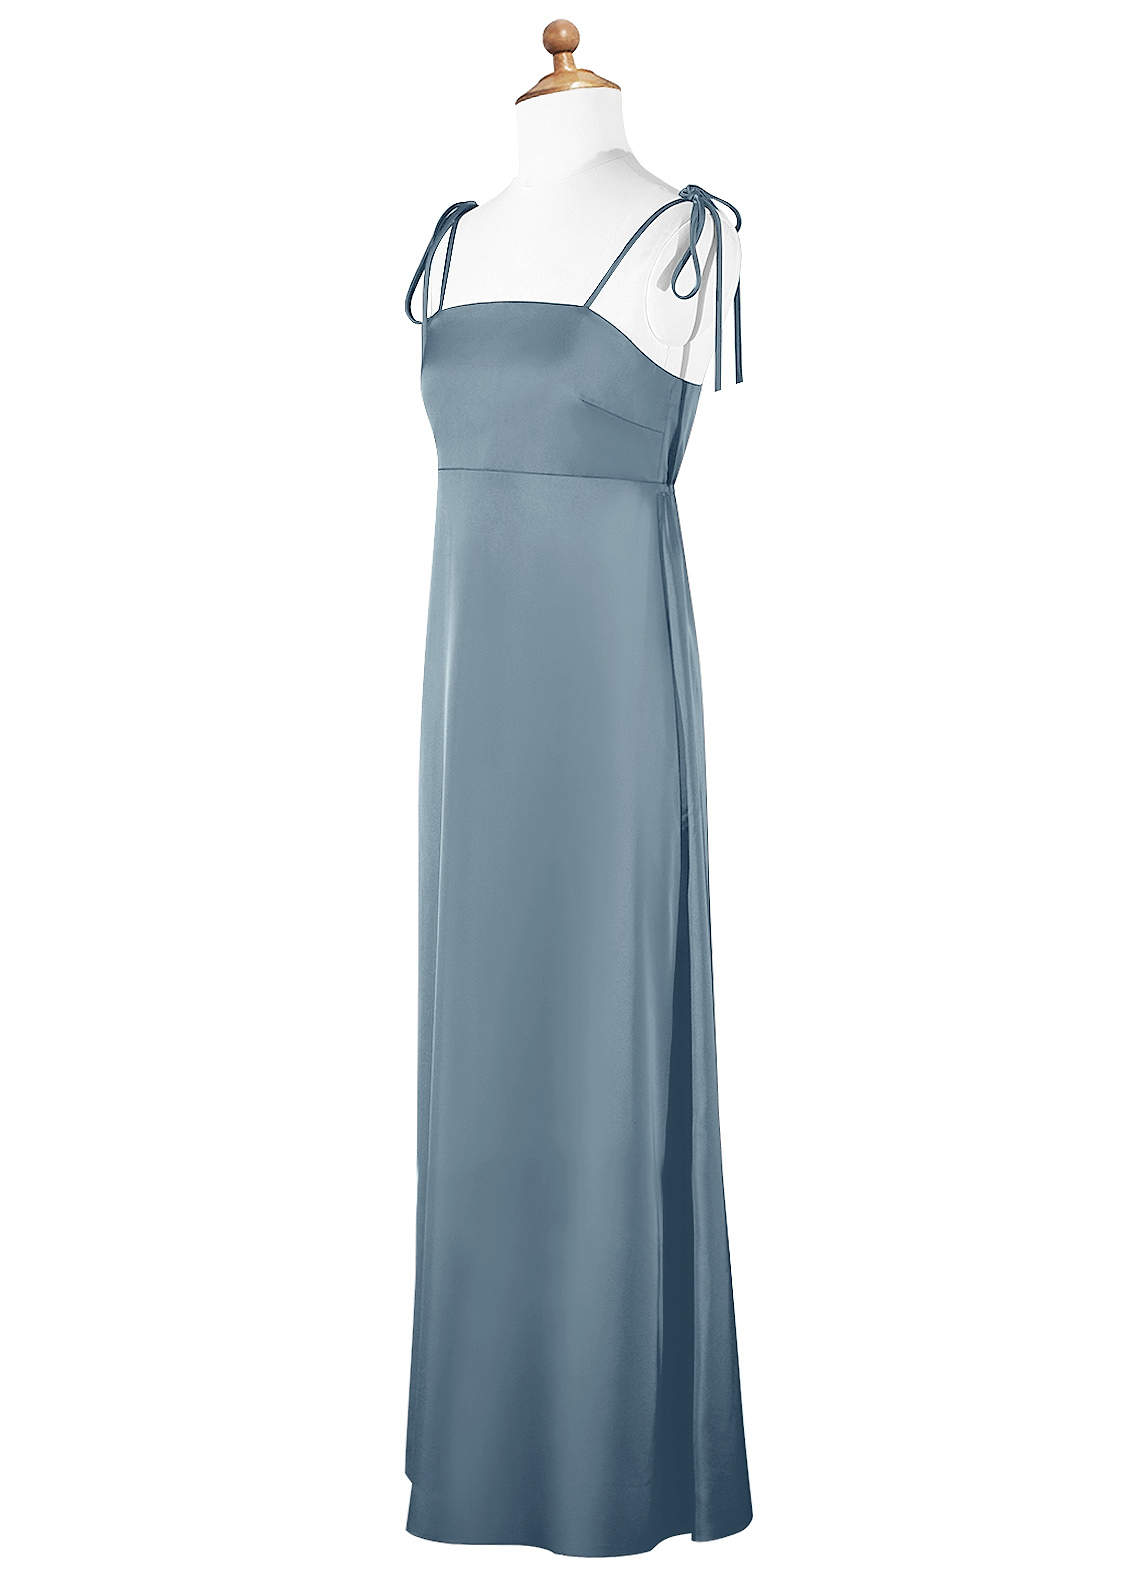 Azazie Violeta A-Line Bow Stretch Satin Floor-Length Junior Bridesmaid Dress image1